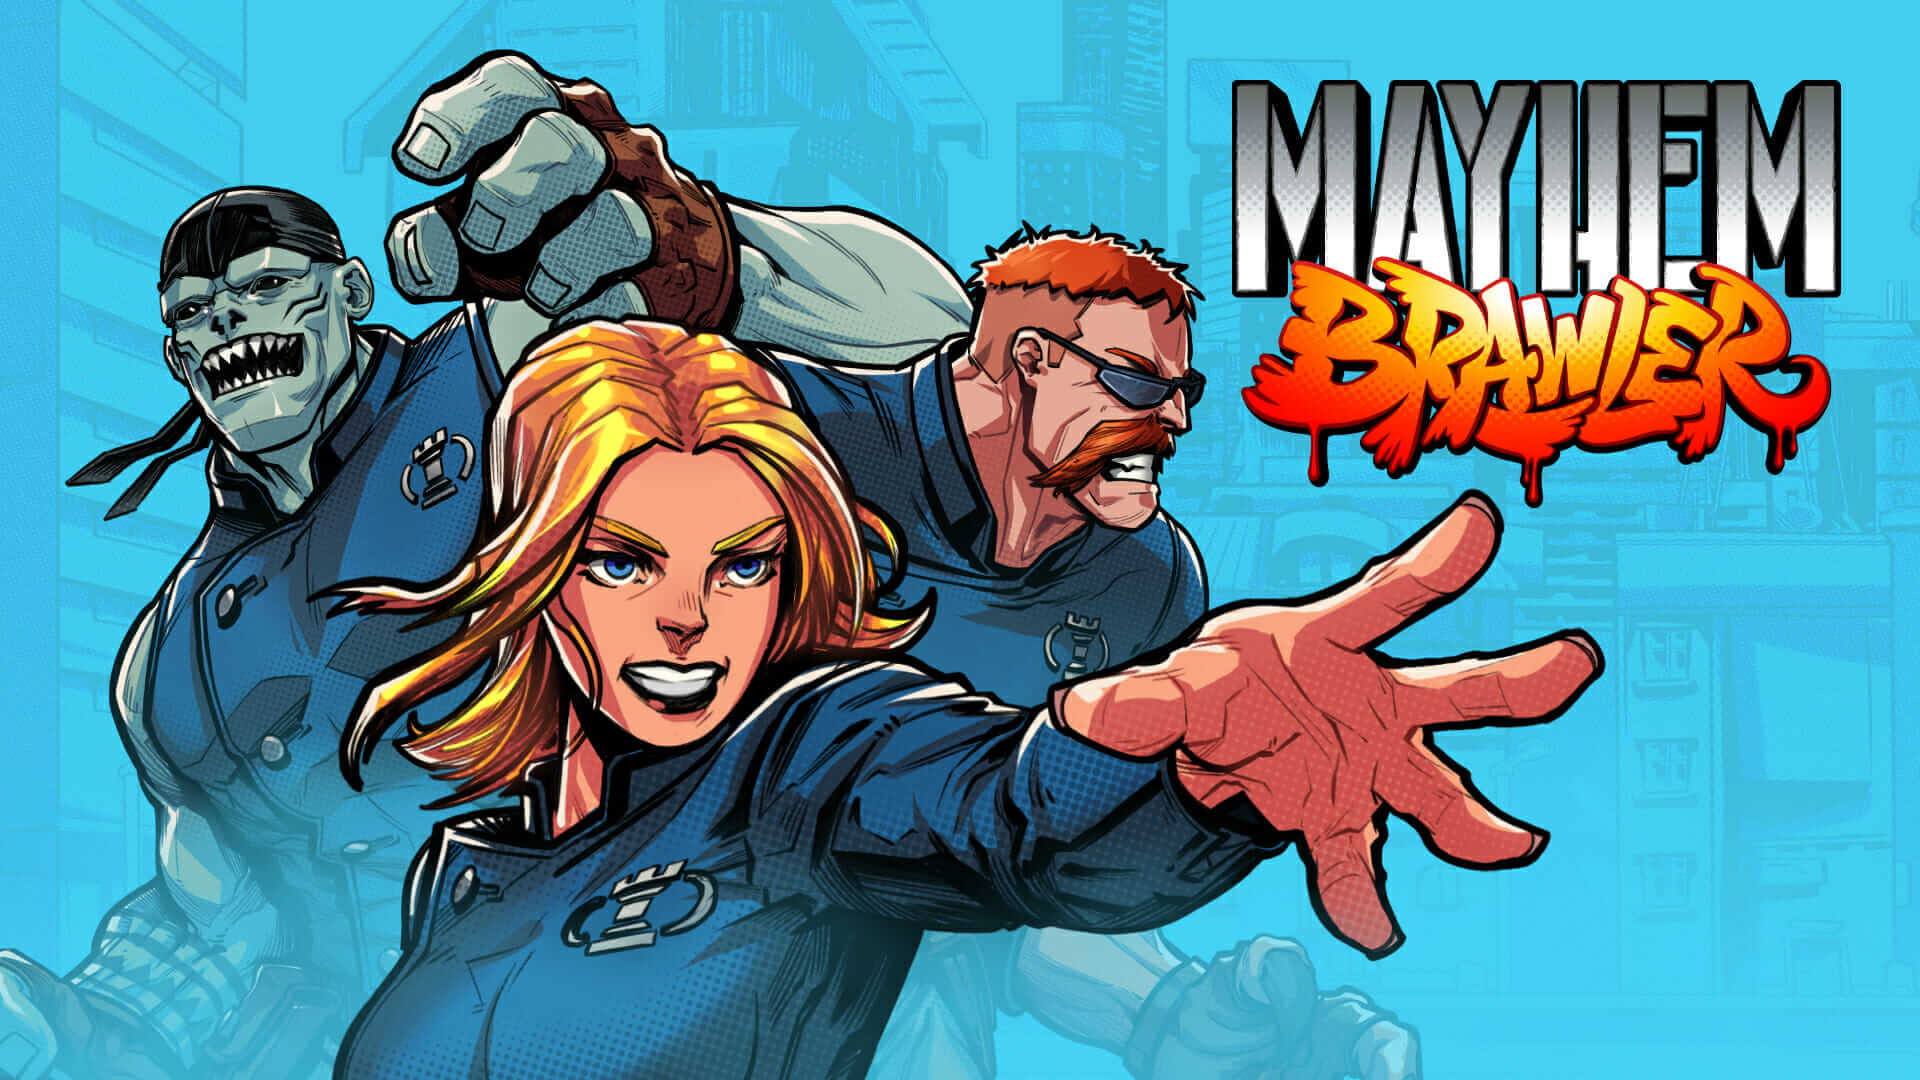 Mayhem Brawler/ Отряд на дежурстве-вторая сюжетная линия / Прохождение #5